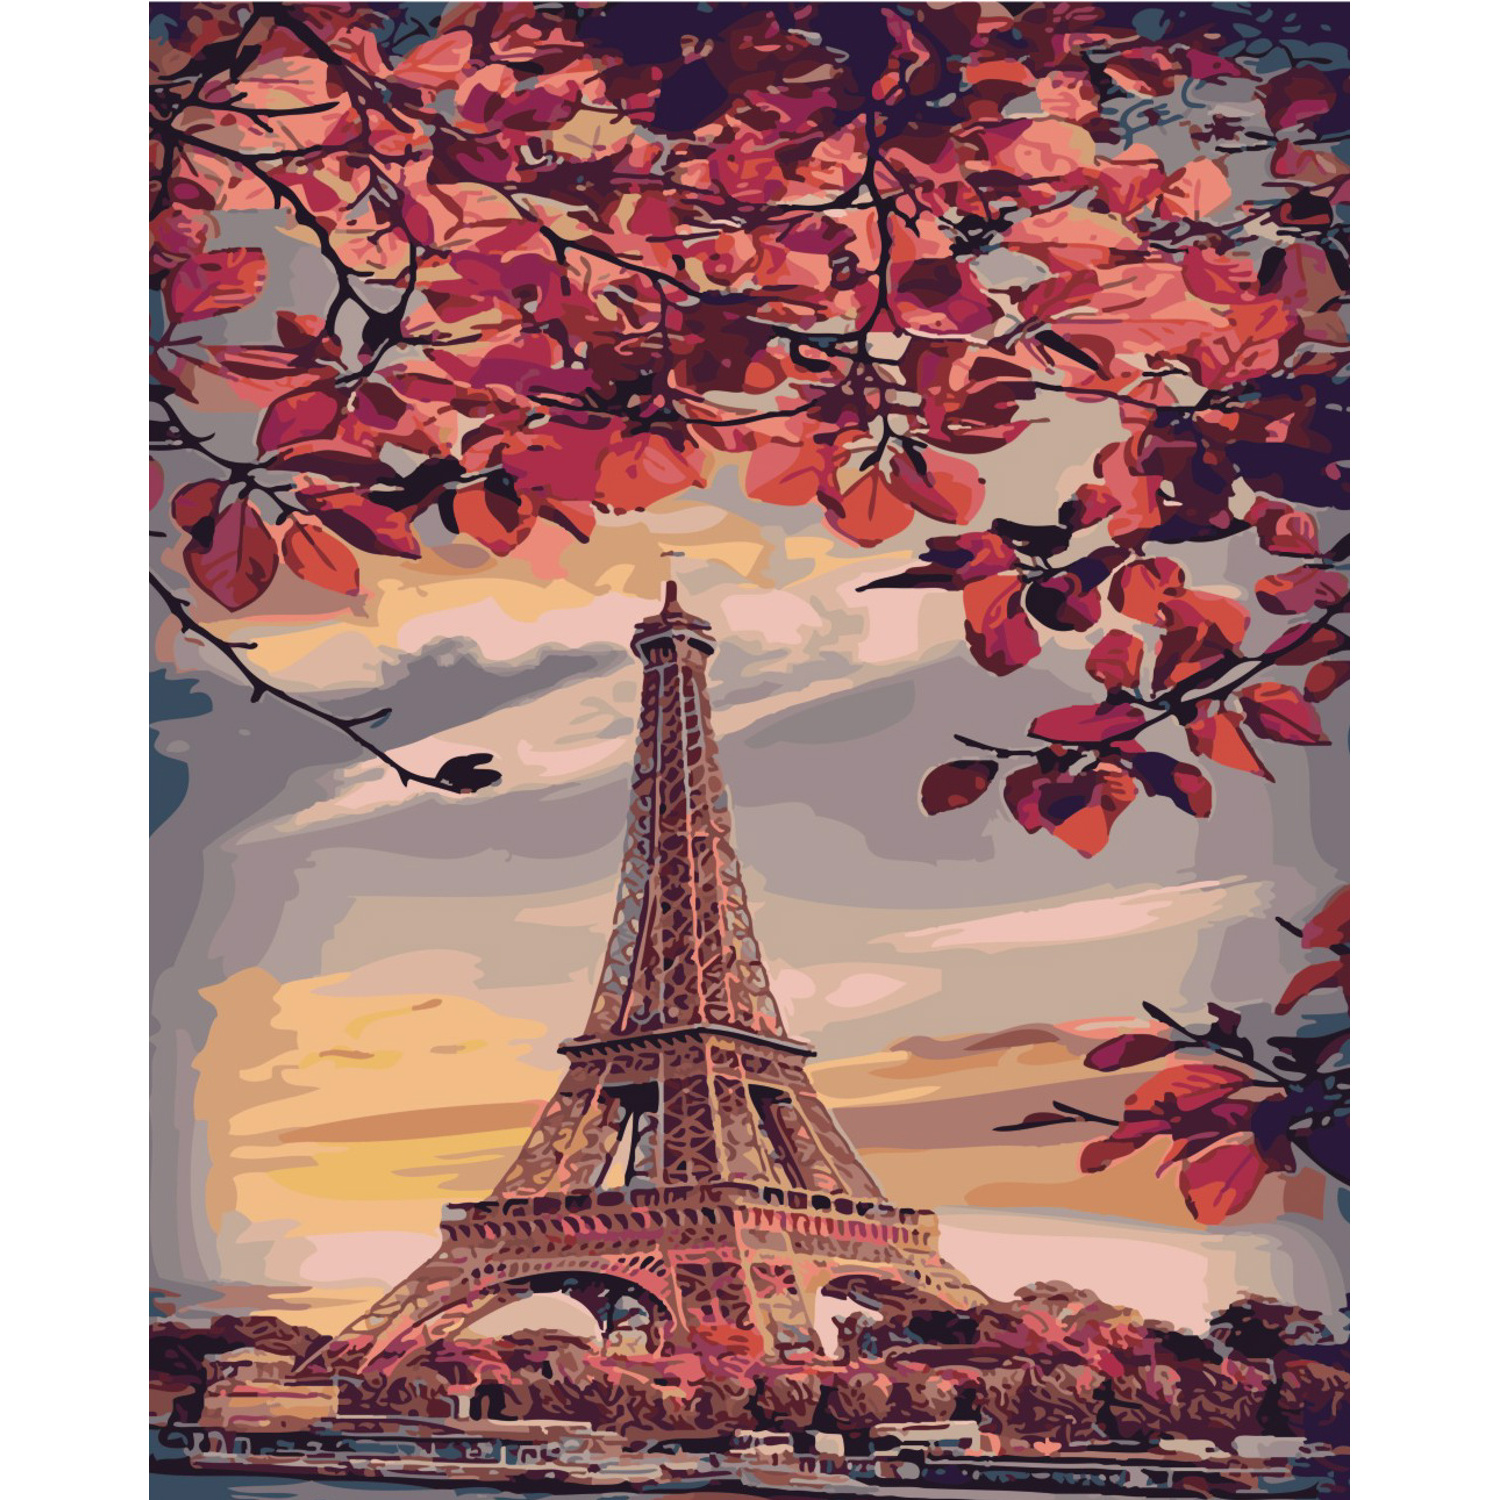 Malen nach Zahlen Strateg Paints of Paris auf farbigem Hintergrund, Größe 40x50 cm (SY6443)